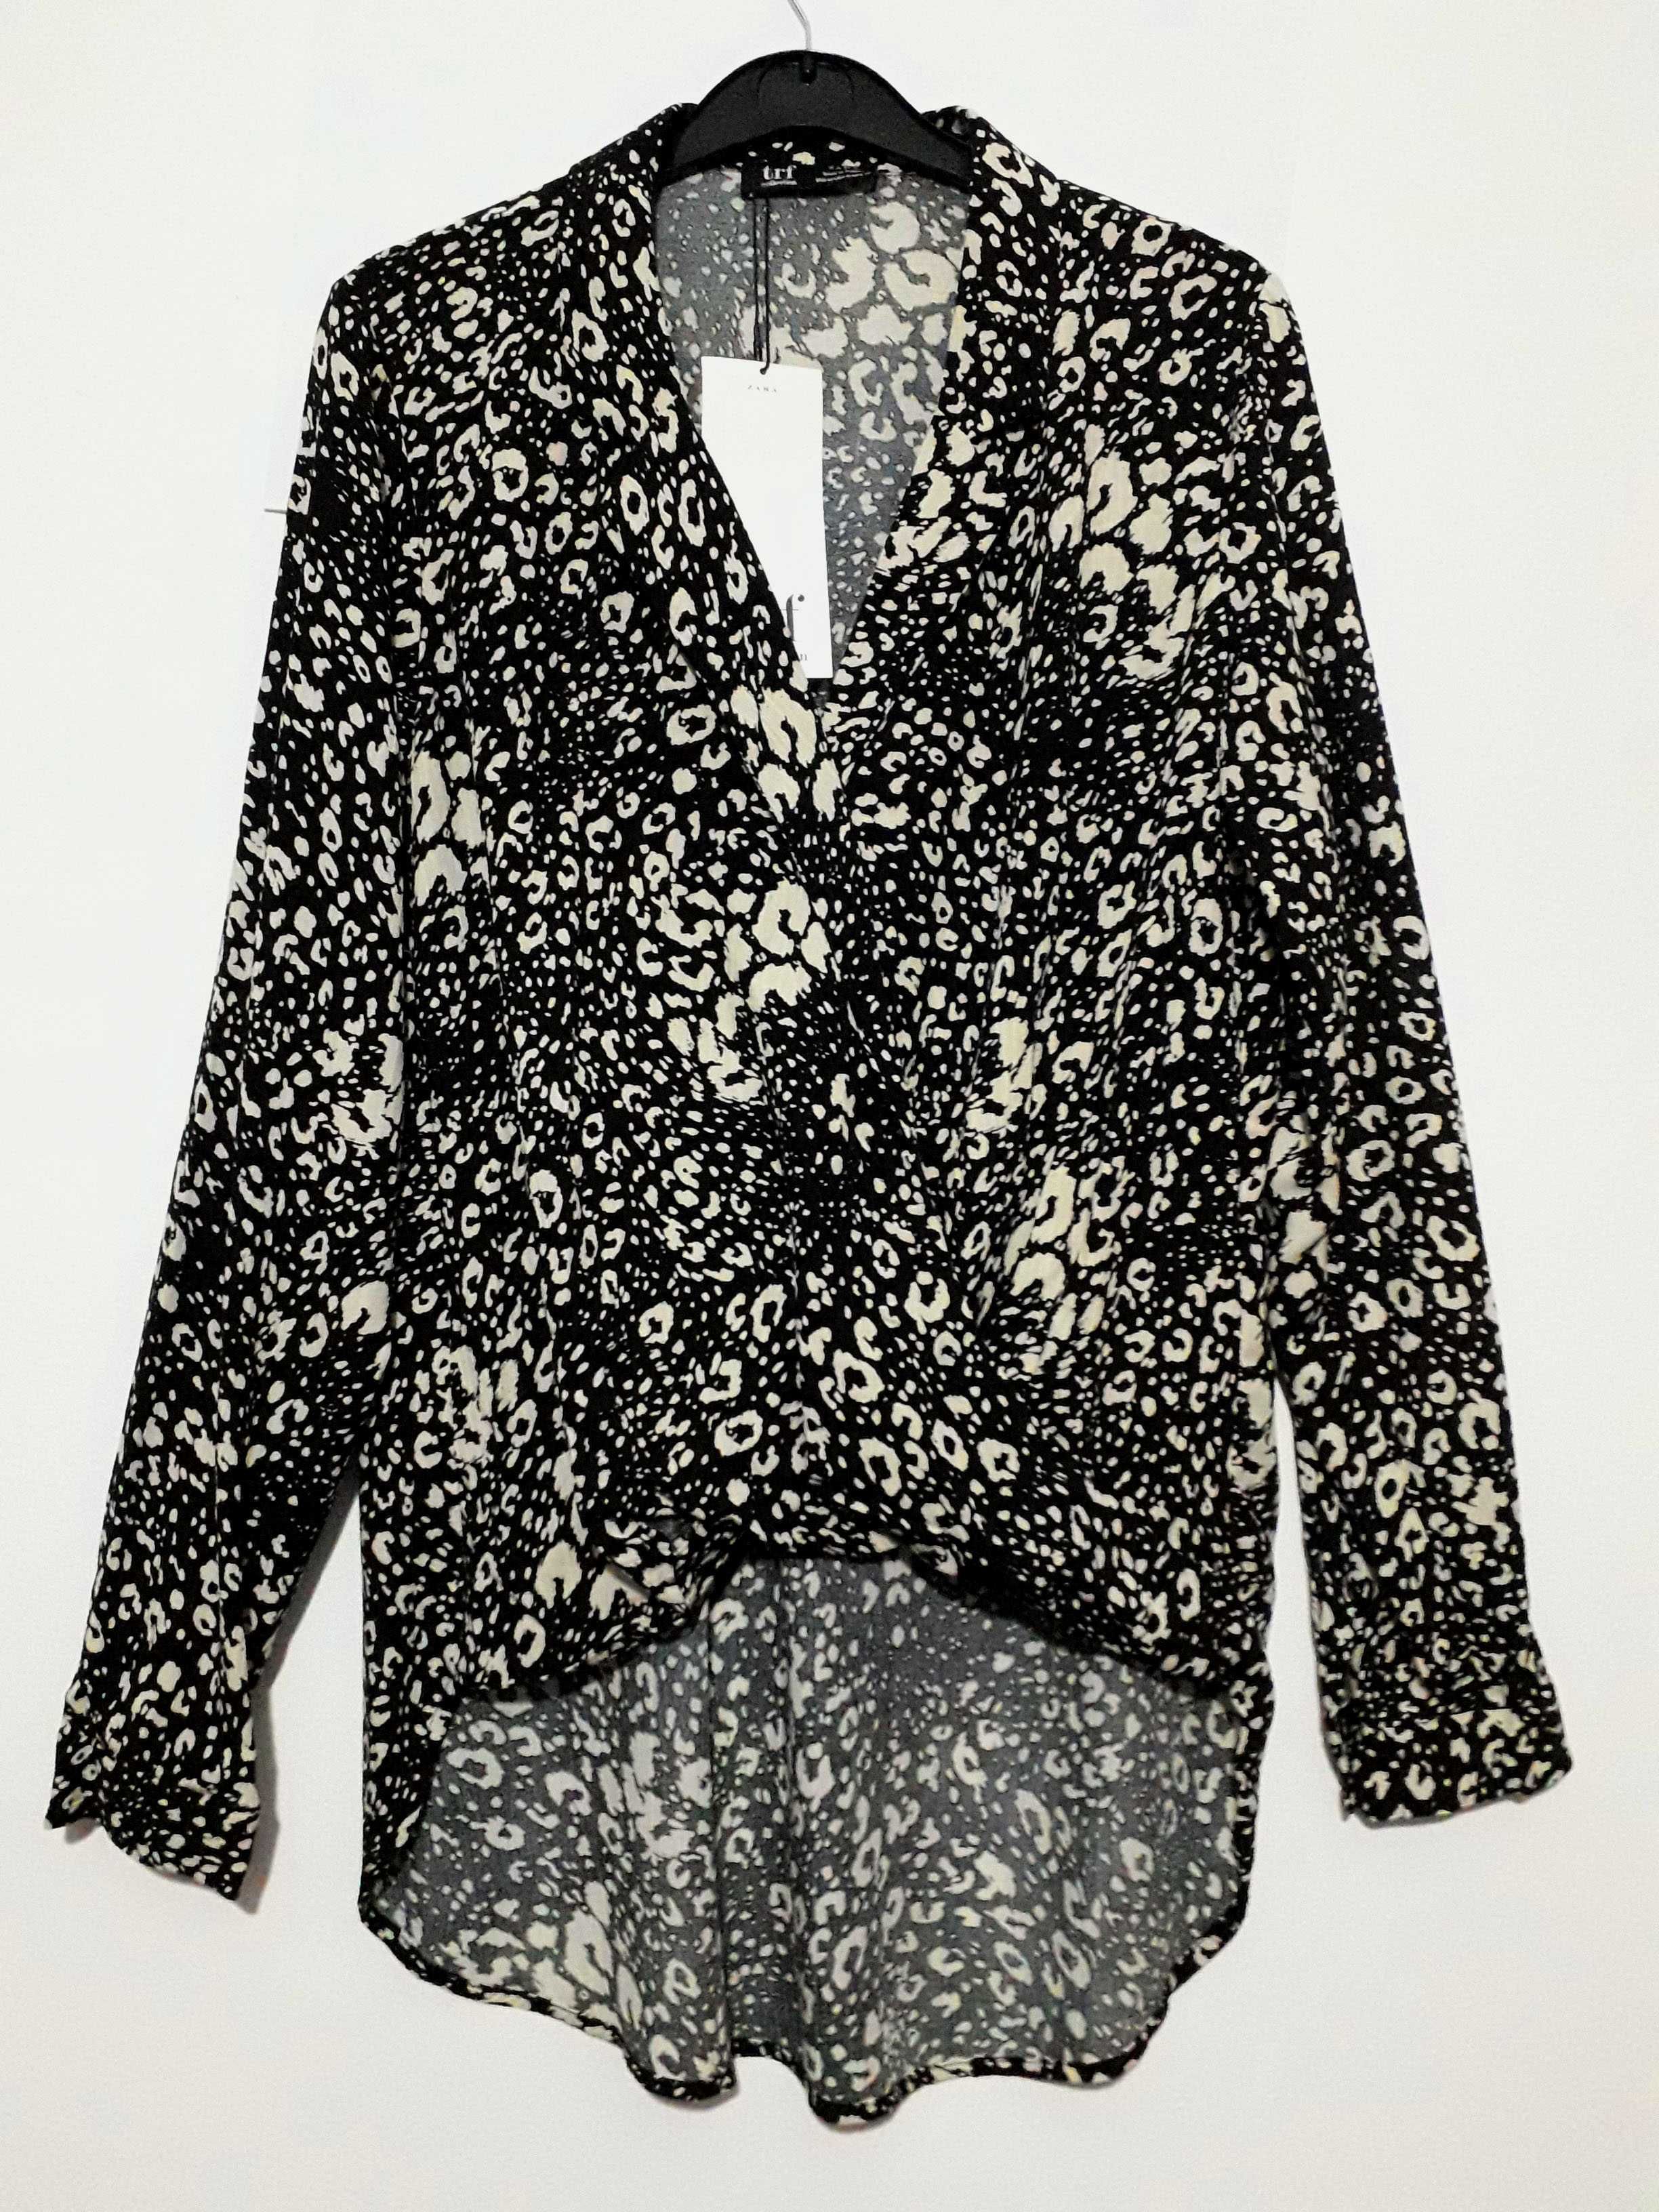 Blusa cruzada padrão animal Zara TRF Tam: M Nova c/etiqueta